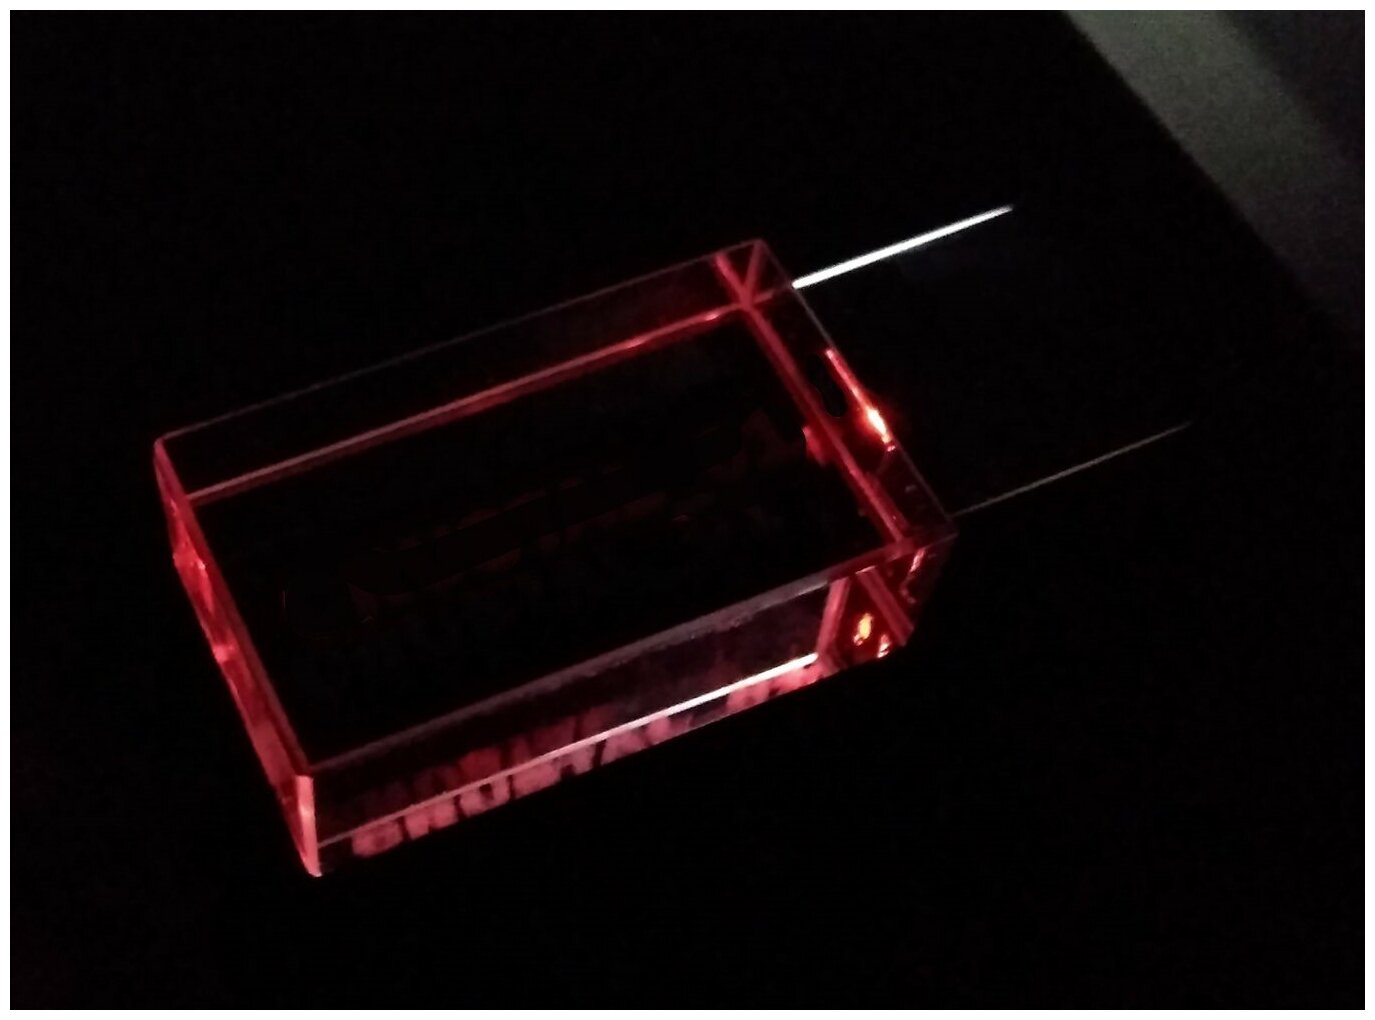 Прямоугольная стеклянная флешка под гравировку 3D логотипа (64 Гб / GB USB 2.0 Красный/Red cristal-01 apexto UL5030 LED)